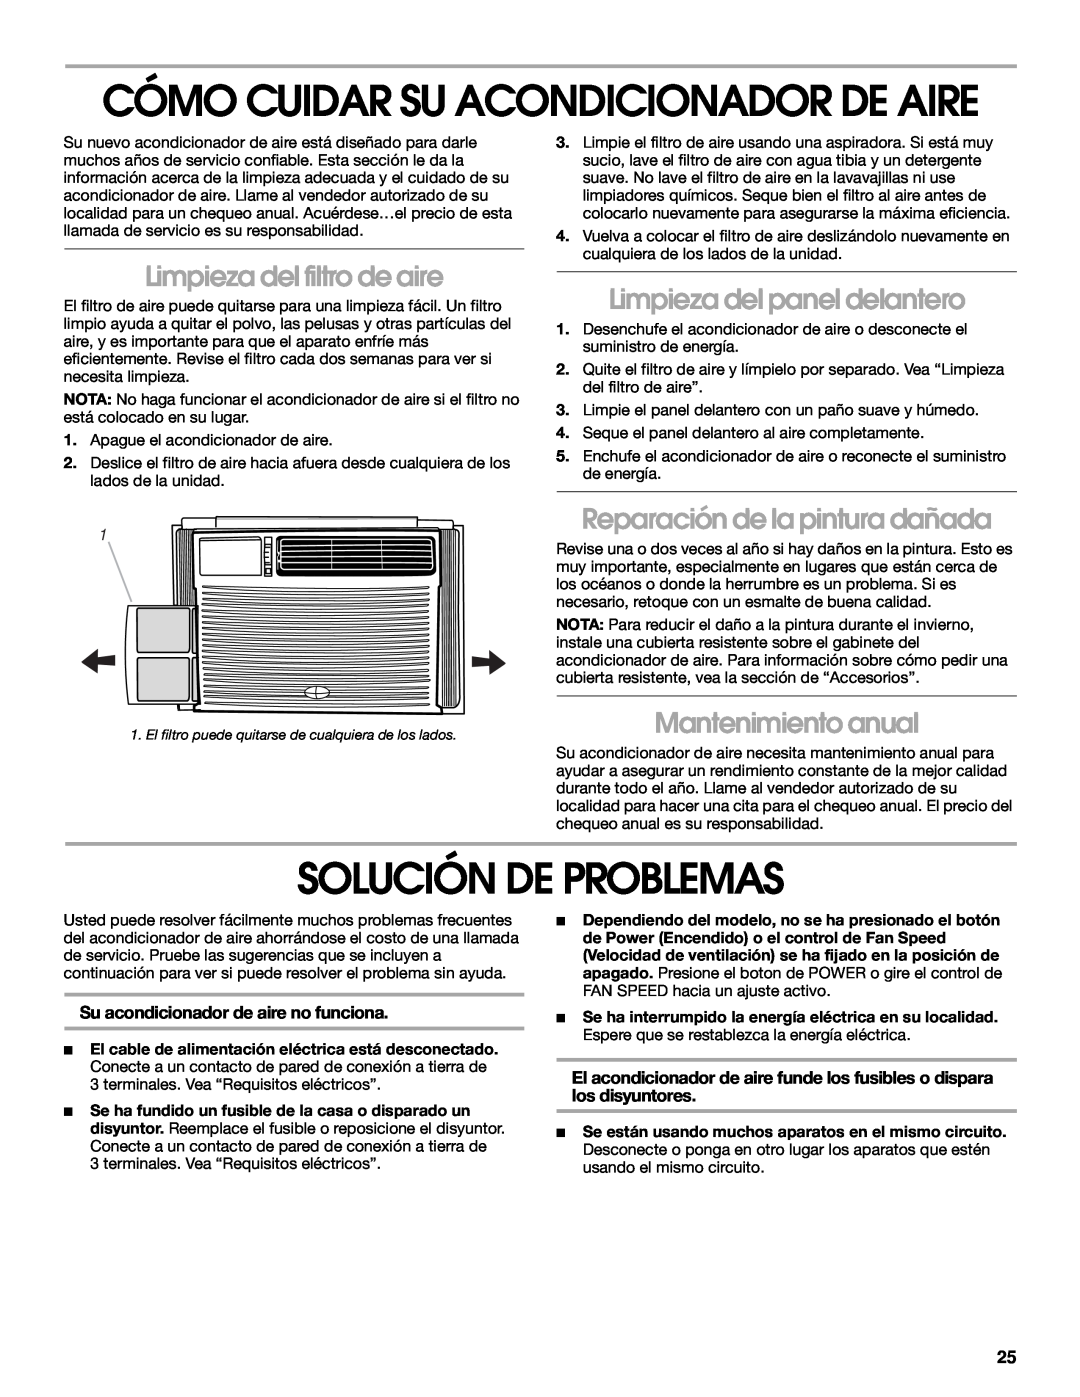 Whirlpool CA10WXP0 manual Cómo Cuidar Su Acondicionador De Aire, Solución De Problemas, Limpieza del filtro de aire 